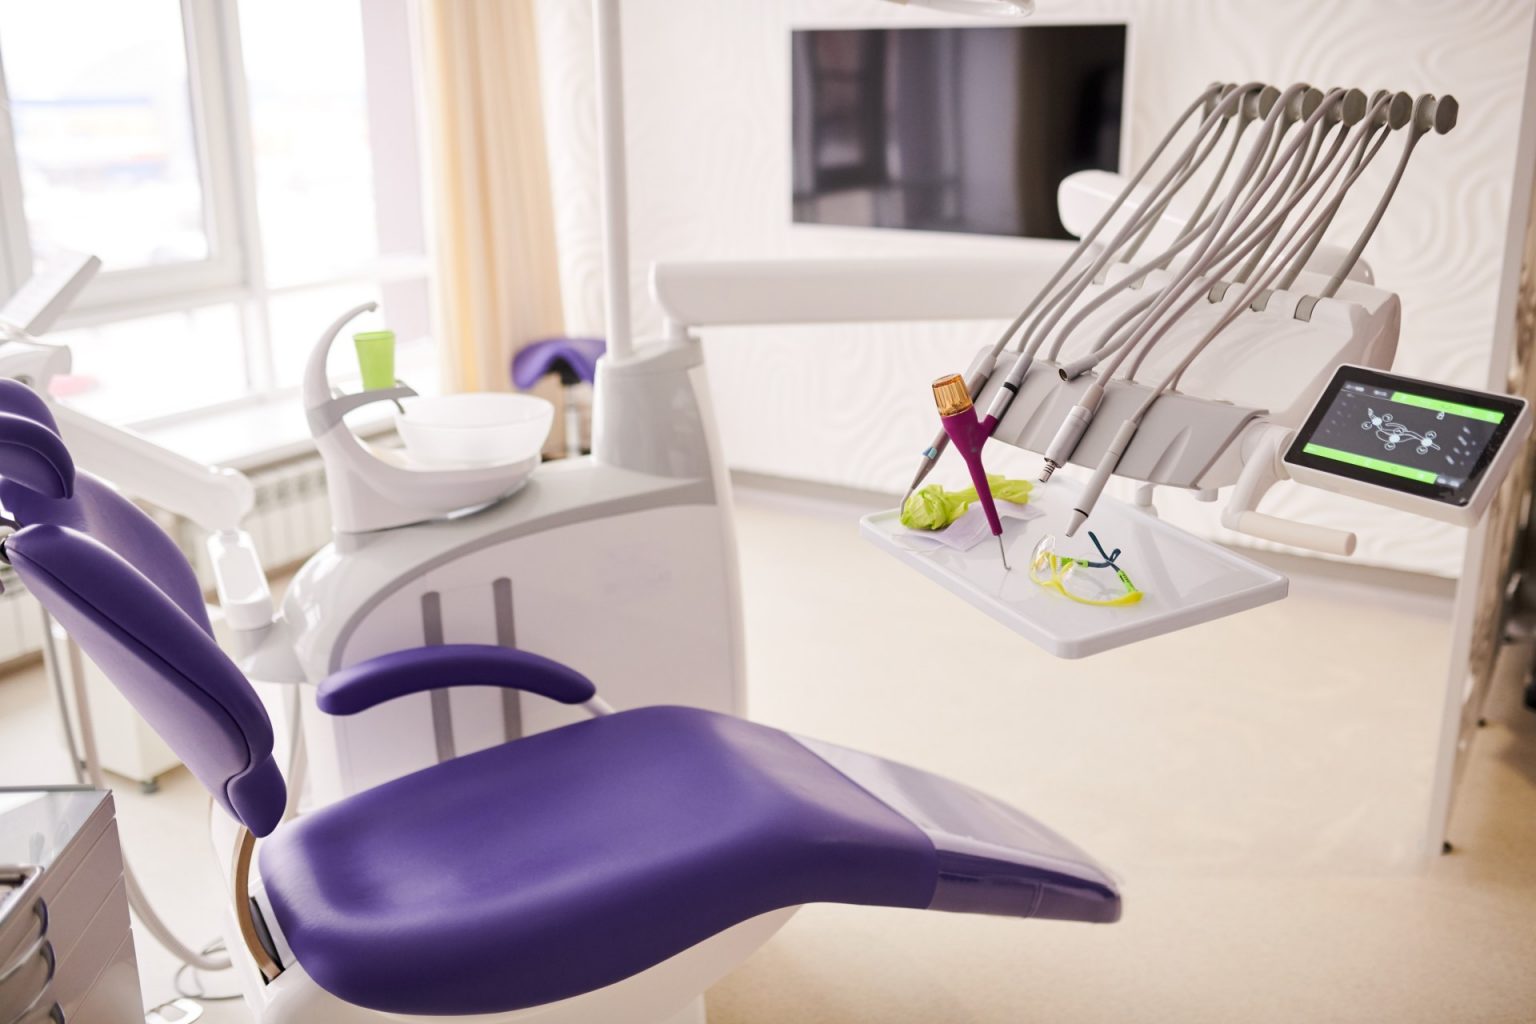 Dental Clinic Design Ideas Dental Chair In Modern Clinic 1536x1024 